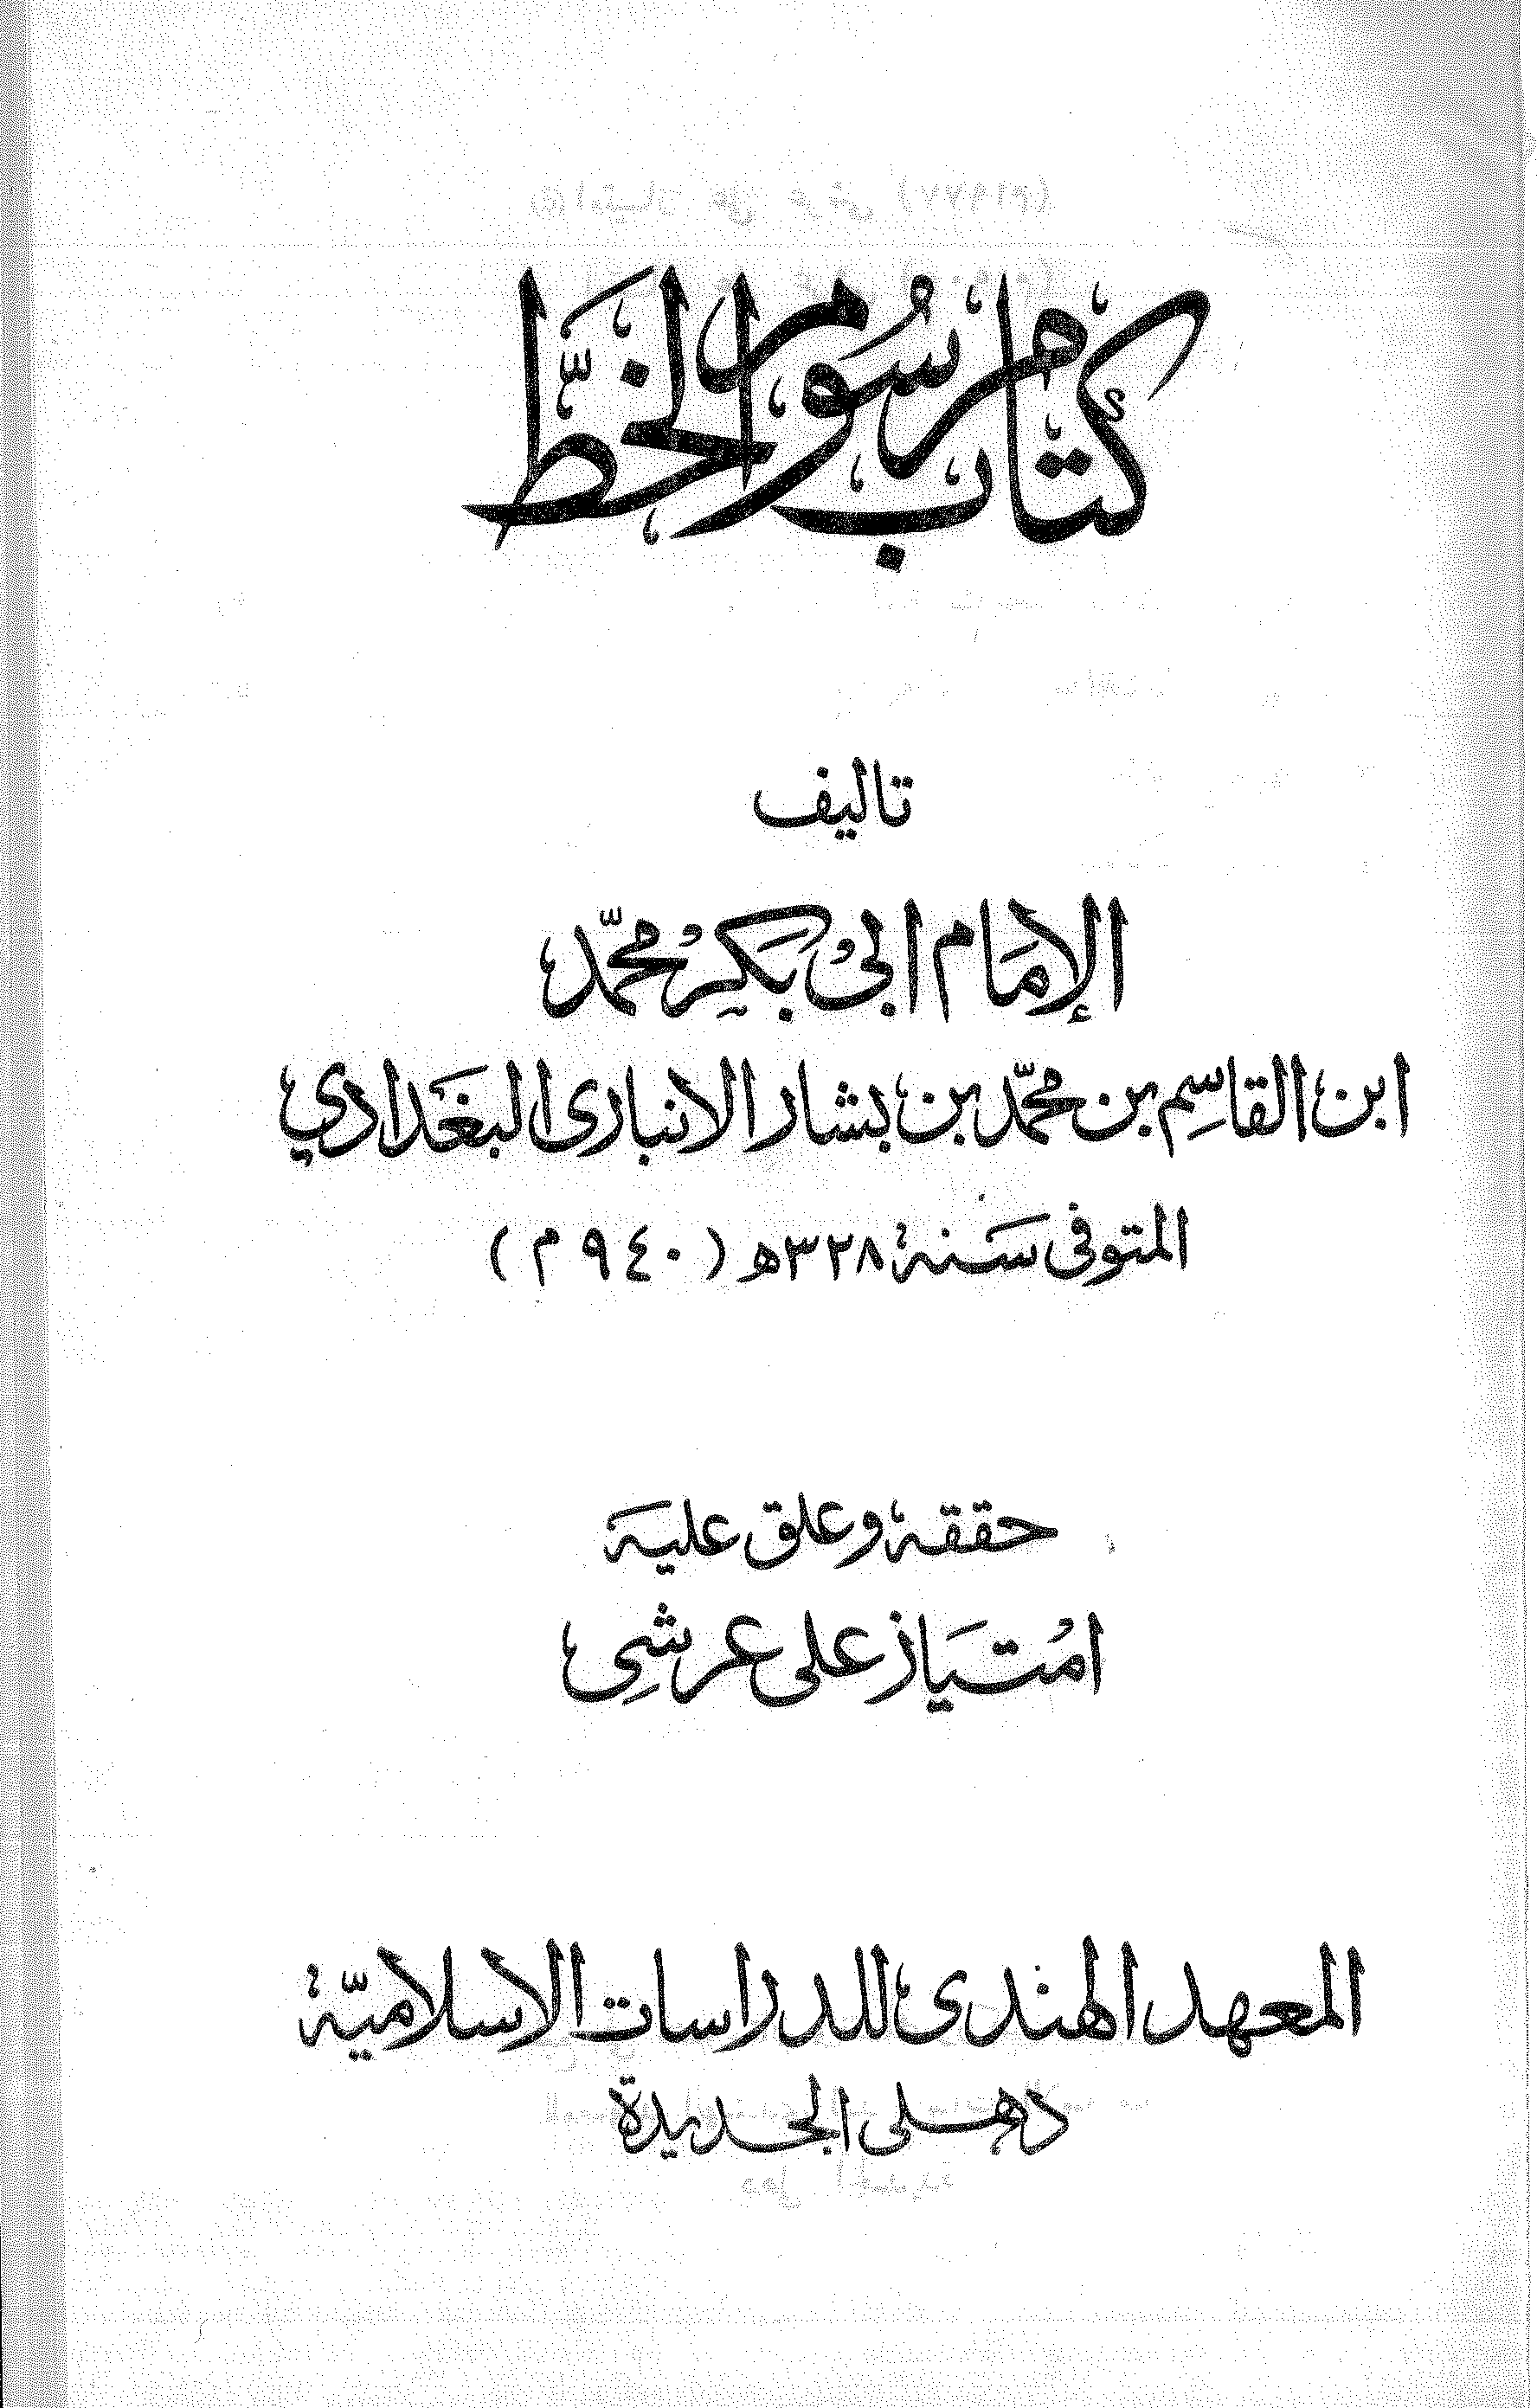 تحميل كتاب مرسوم الخط (ت. امتياز) للمؤلف: الإمام أبو بكر محمد بن القاسم بن بشار الأنباري (ت 328)